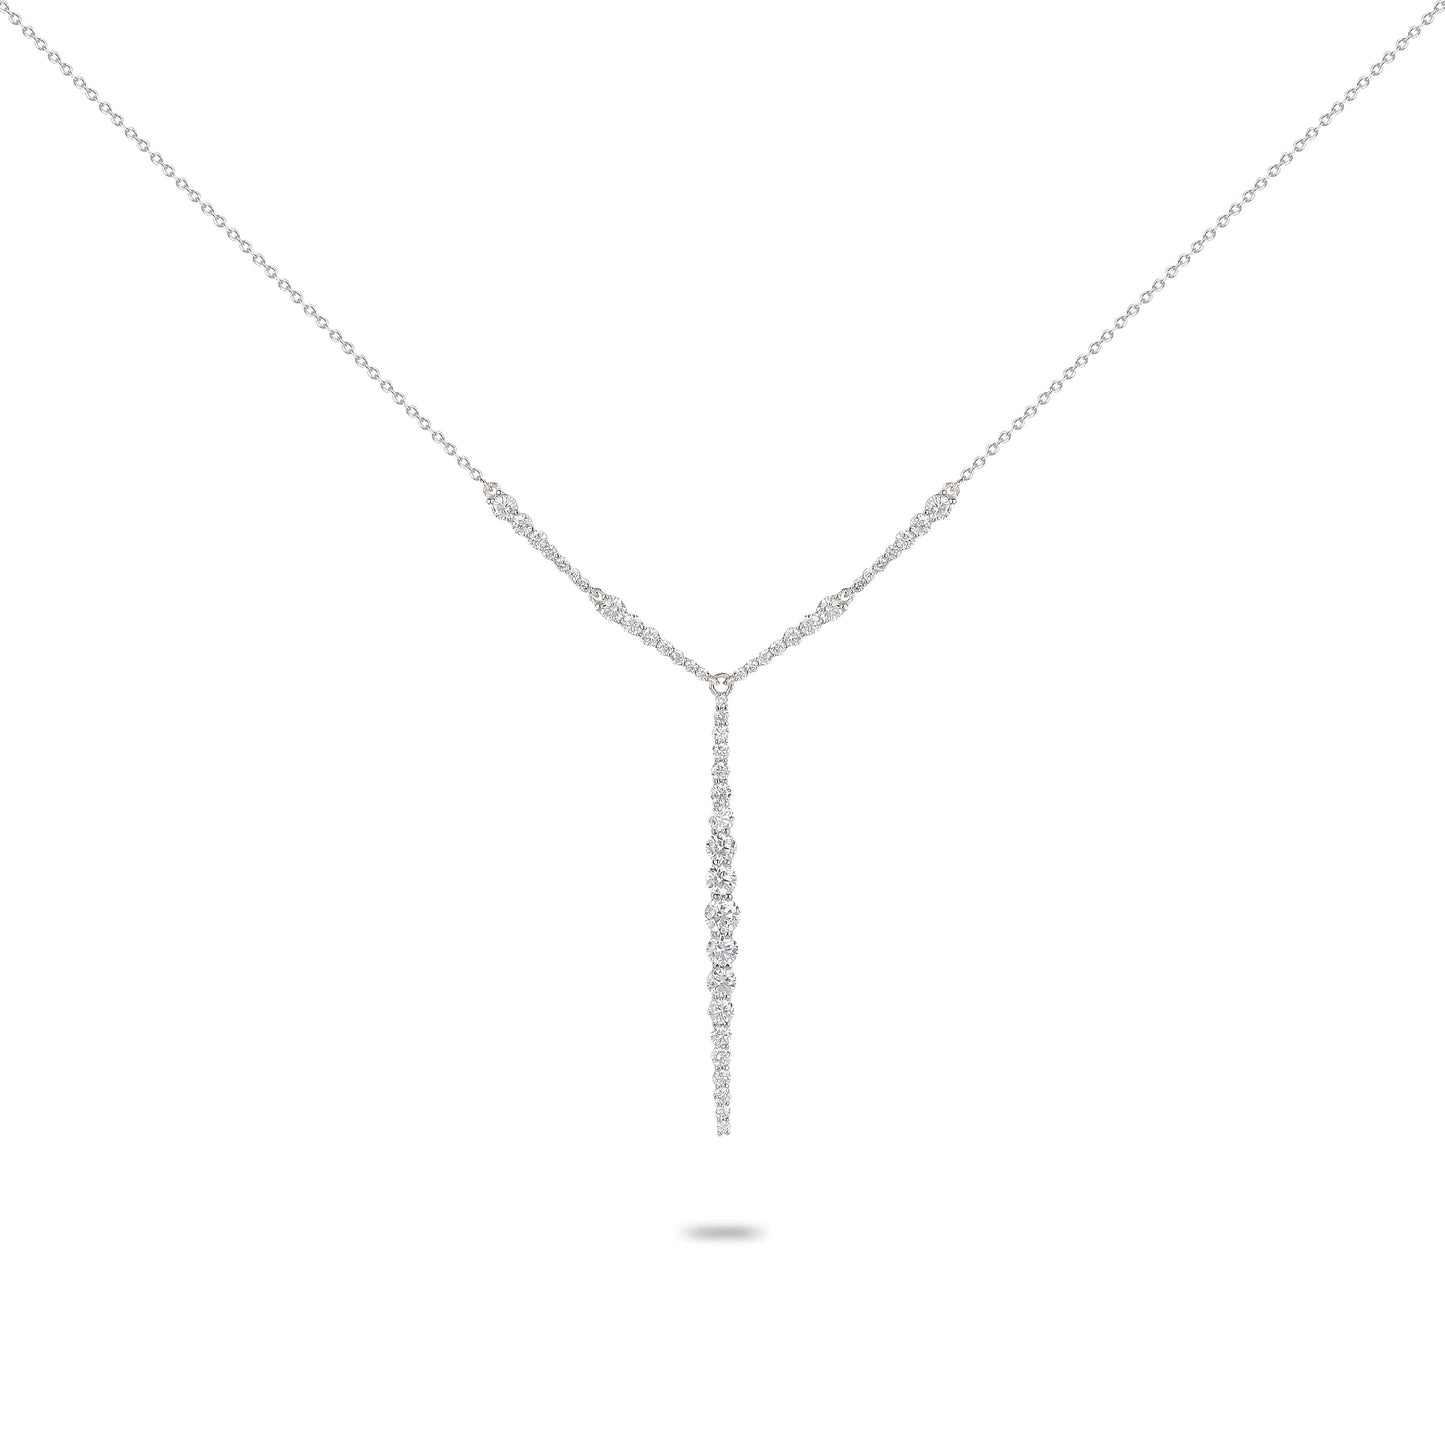 Diamond Line Necklace | Diamond Necklace | Diamond Necklace Design